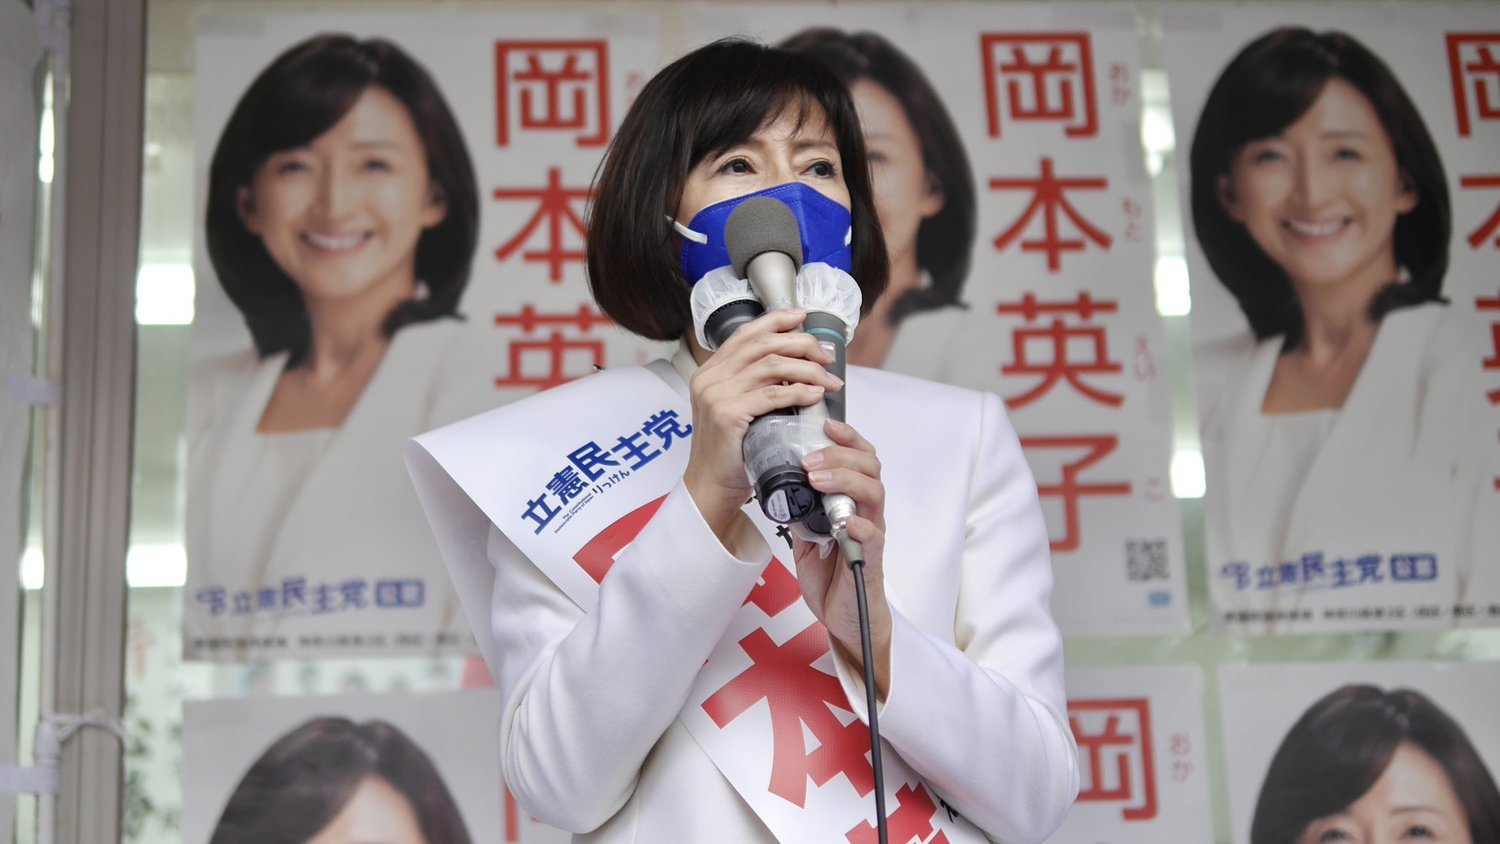 日本眾院改選 菅義偉對決美魔女成自民黨 vs. 在野黨聯合的象徵 | 國